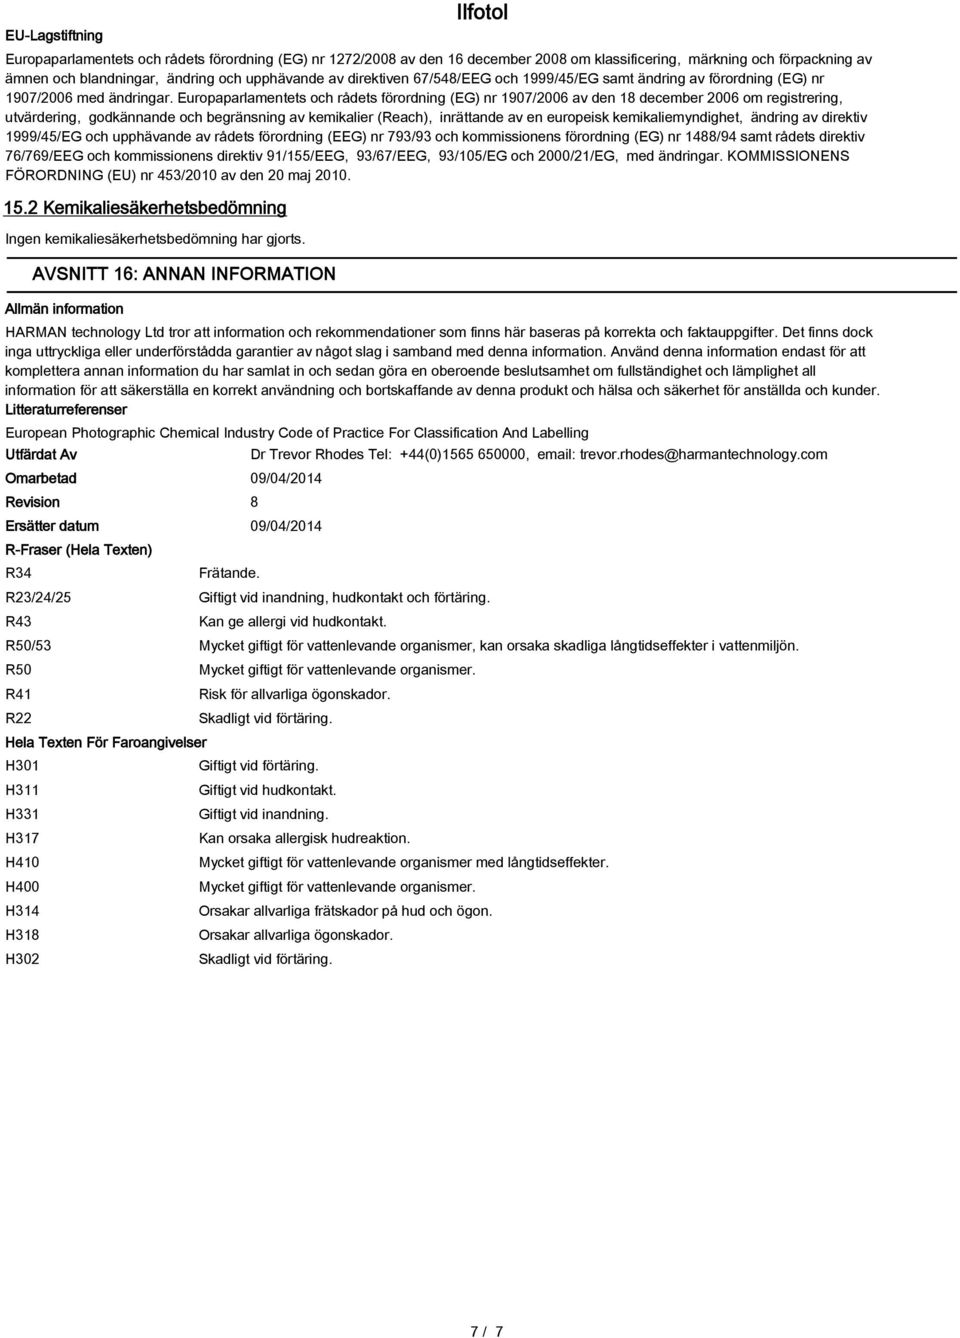 Europaparlamentets och rådets förordning (EG) nr 1907/2006 av den 18 december 2006 om registrering, utvärdering, godkännande och begränsning av kemikalier (Reach), inrättande av en europeisk